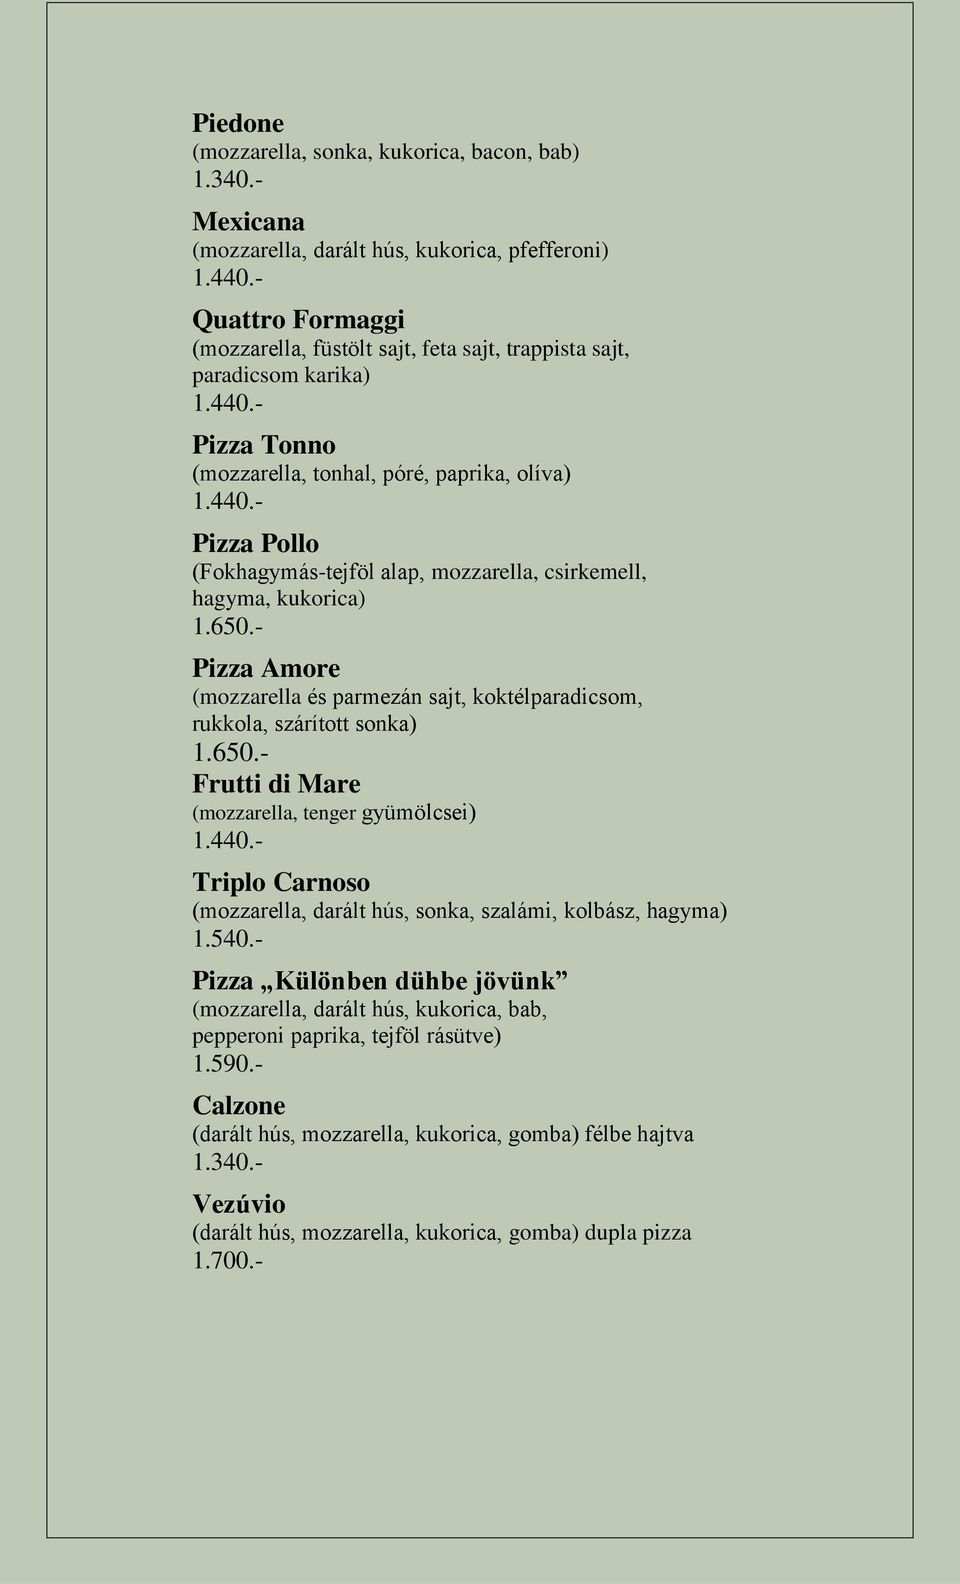 rukkola, szárított sonka) Frutti di Mare (mozzarella, tenger gyümölcsei) Triplo Carnoso (mozzarella, darált hús, sonka, szalámi, kolbász, hagyma) 1.540.